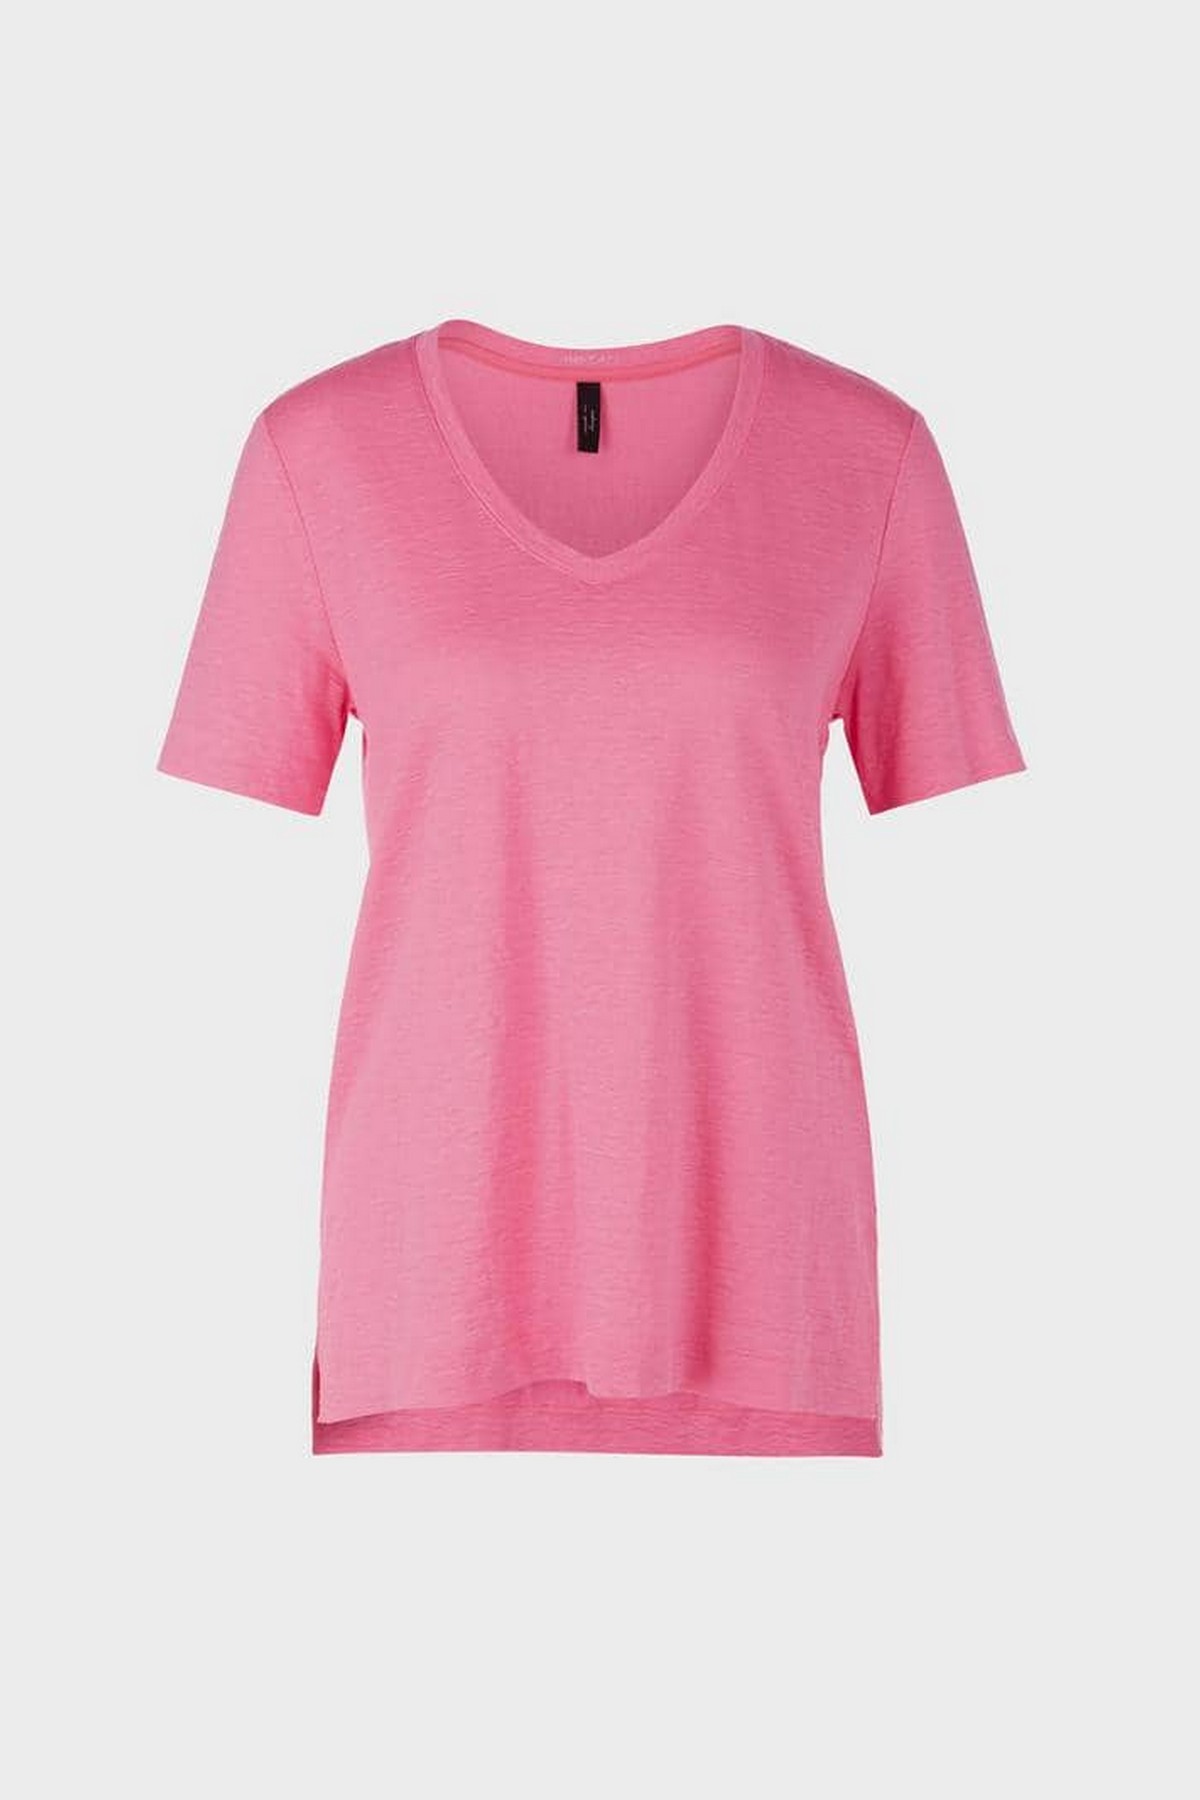 T-shirt V linnen in de kleur pink van het merk Marc Cain